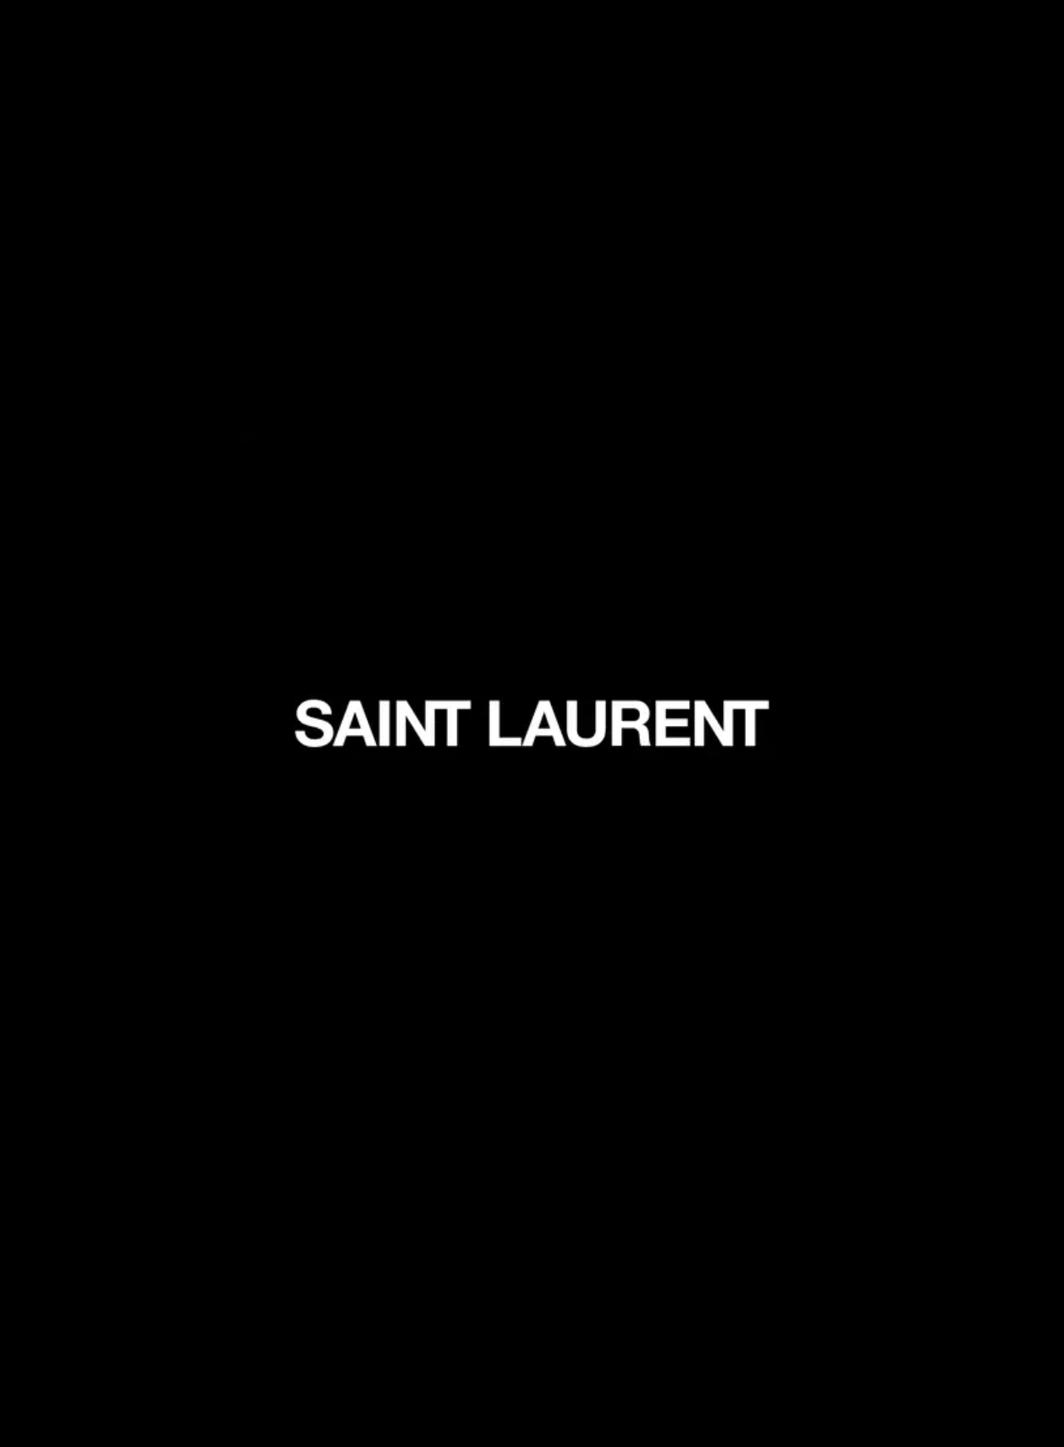 Saint Laurent lance sa première application mobile immersive.